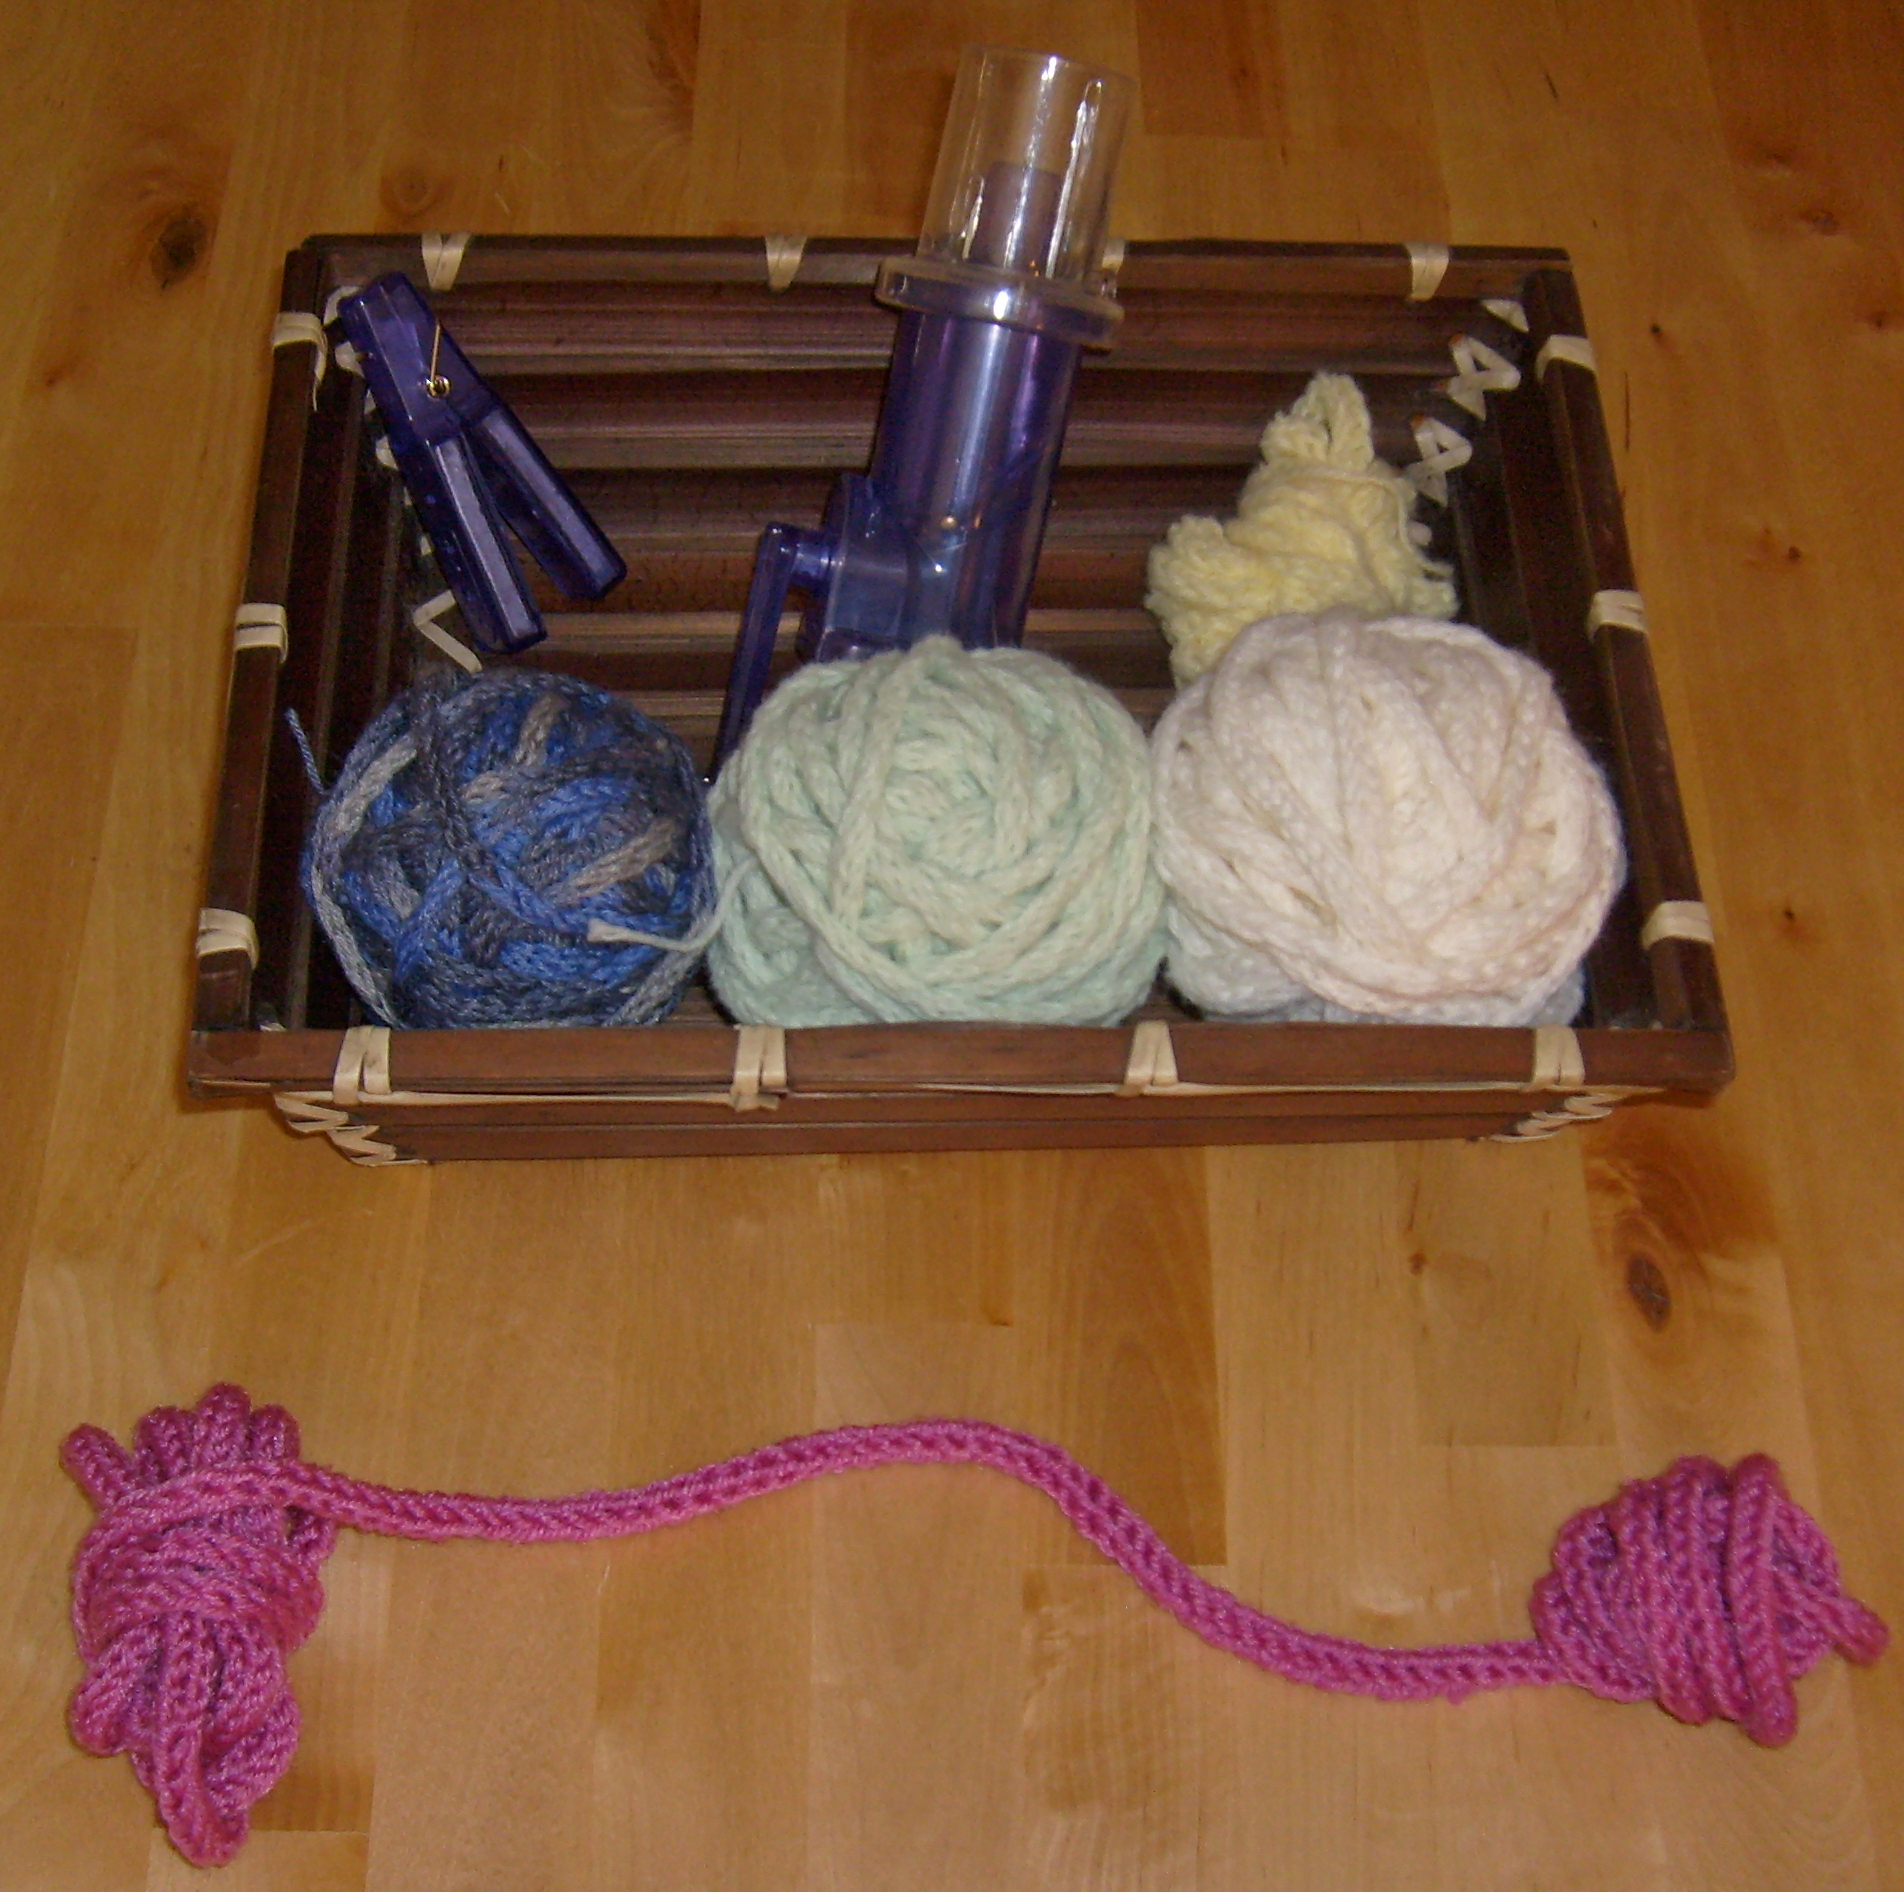 Knitting machine - Wikipedia